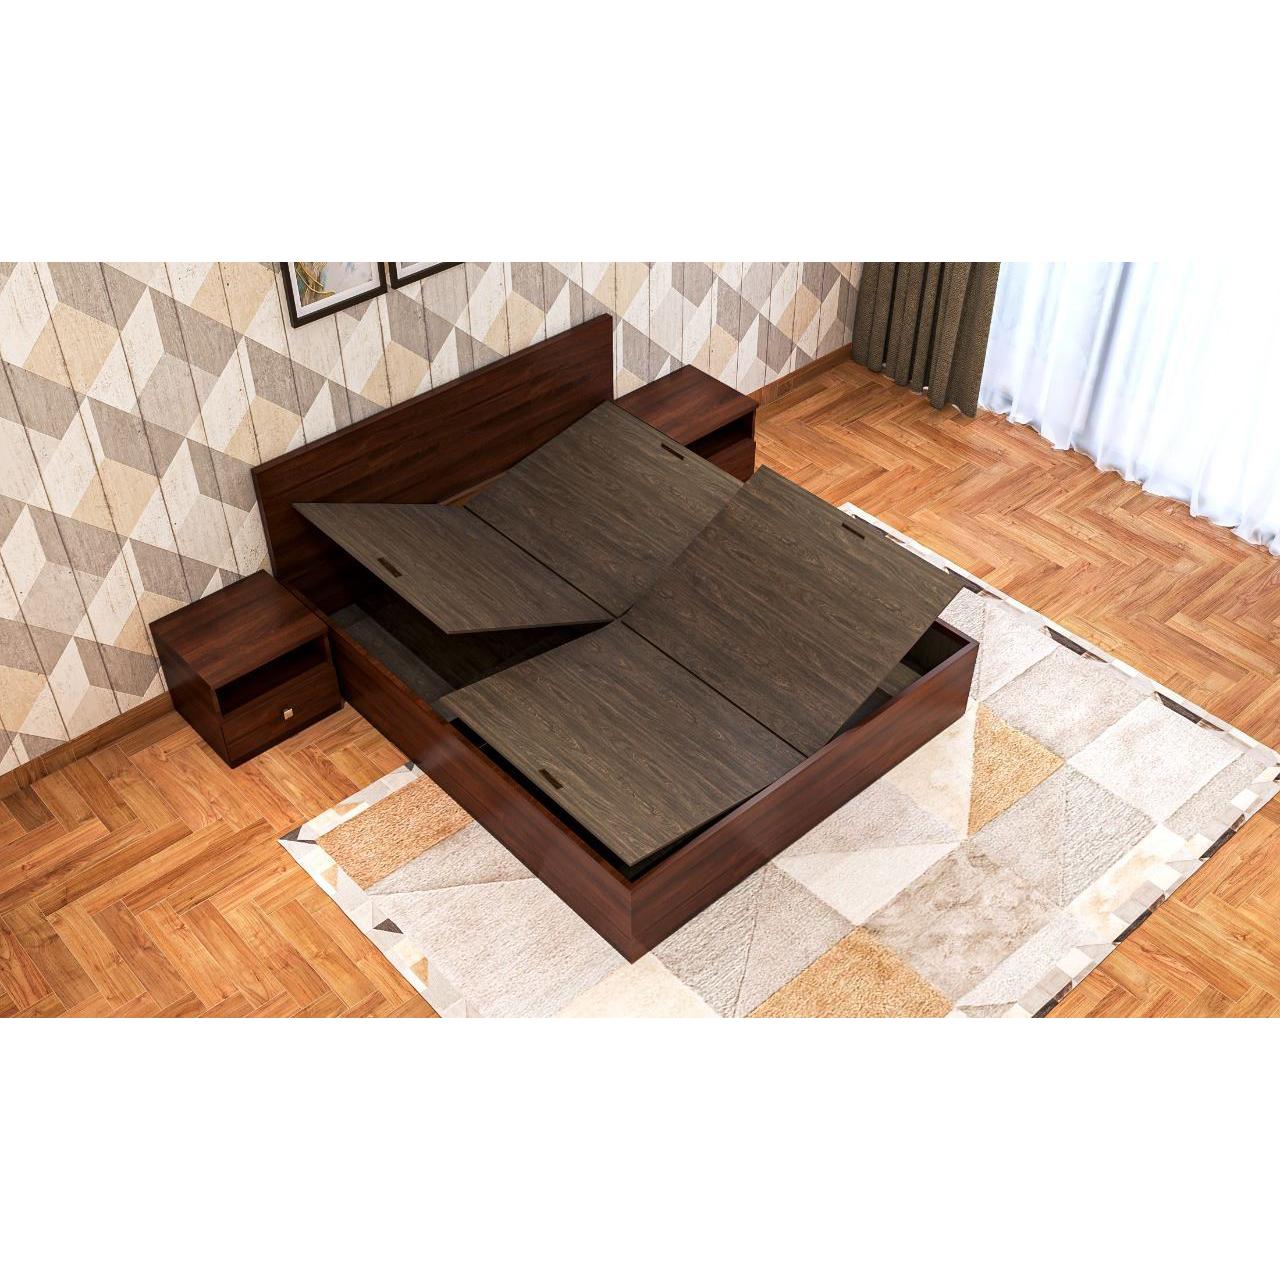 UW-9112,OSAKA DOUBLE BED, Mobel Furniture